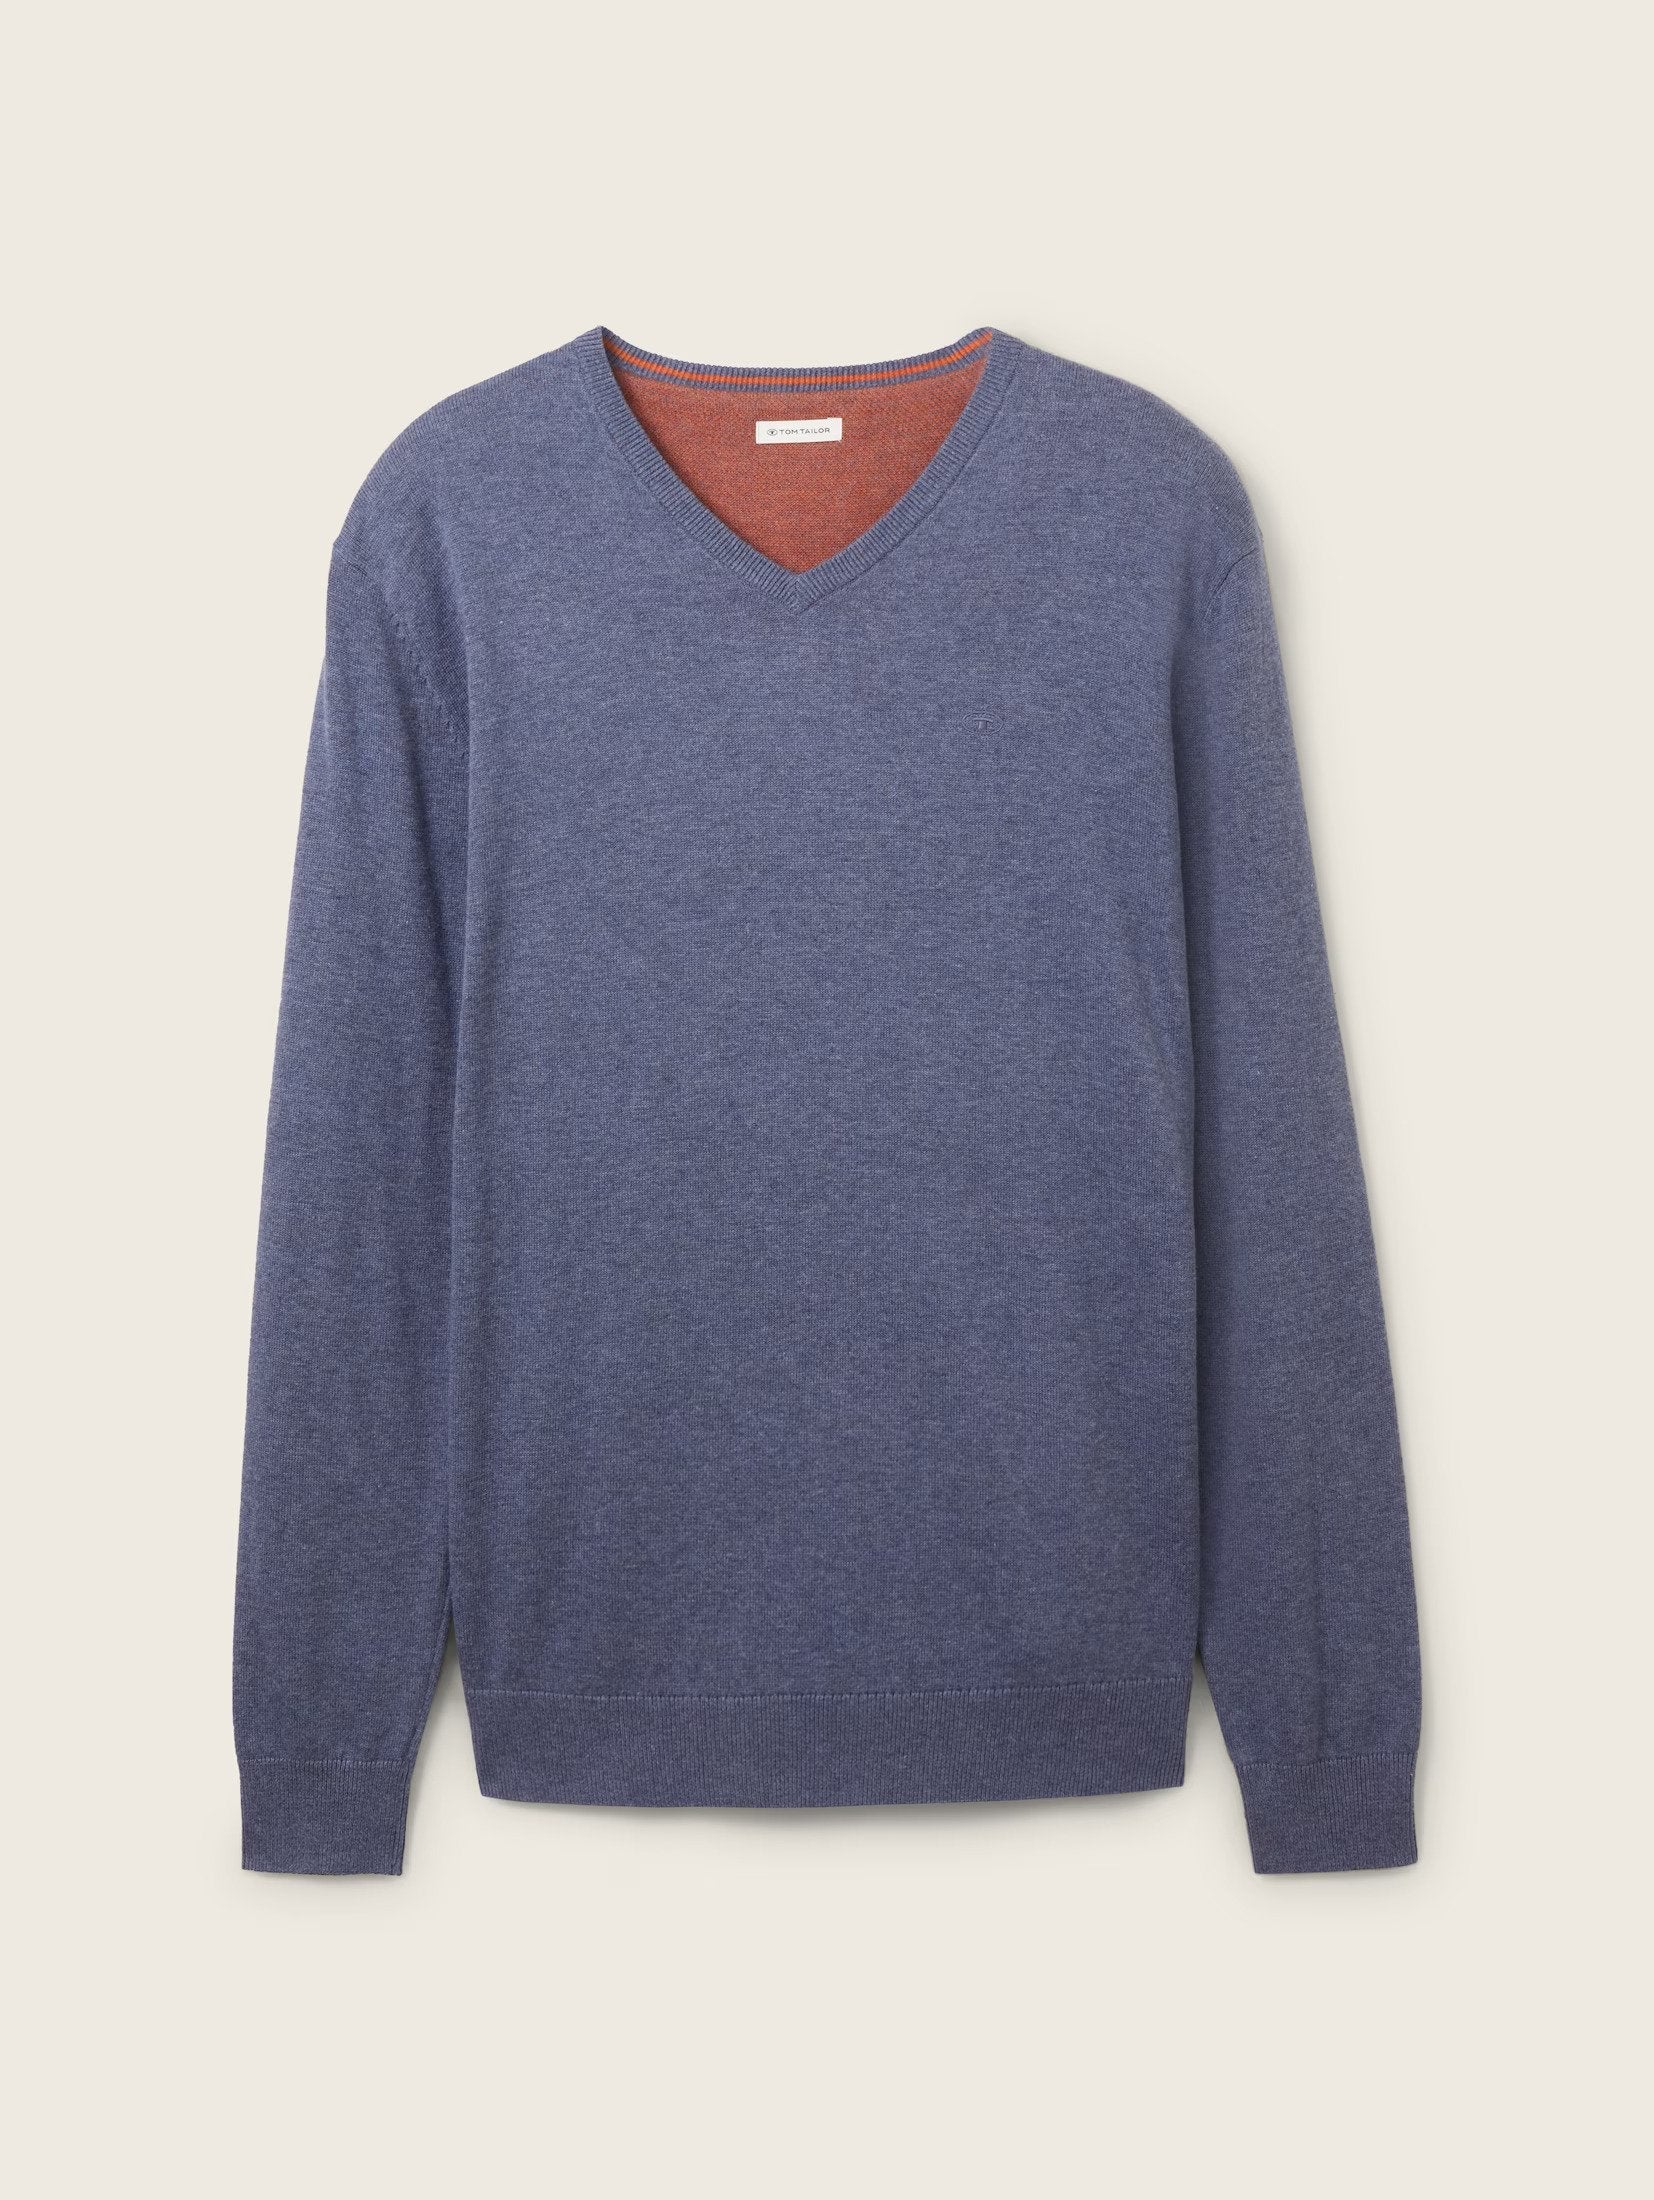 Tom Tailor Basic Knitted V-Neck Indigo Blue Sweater